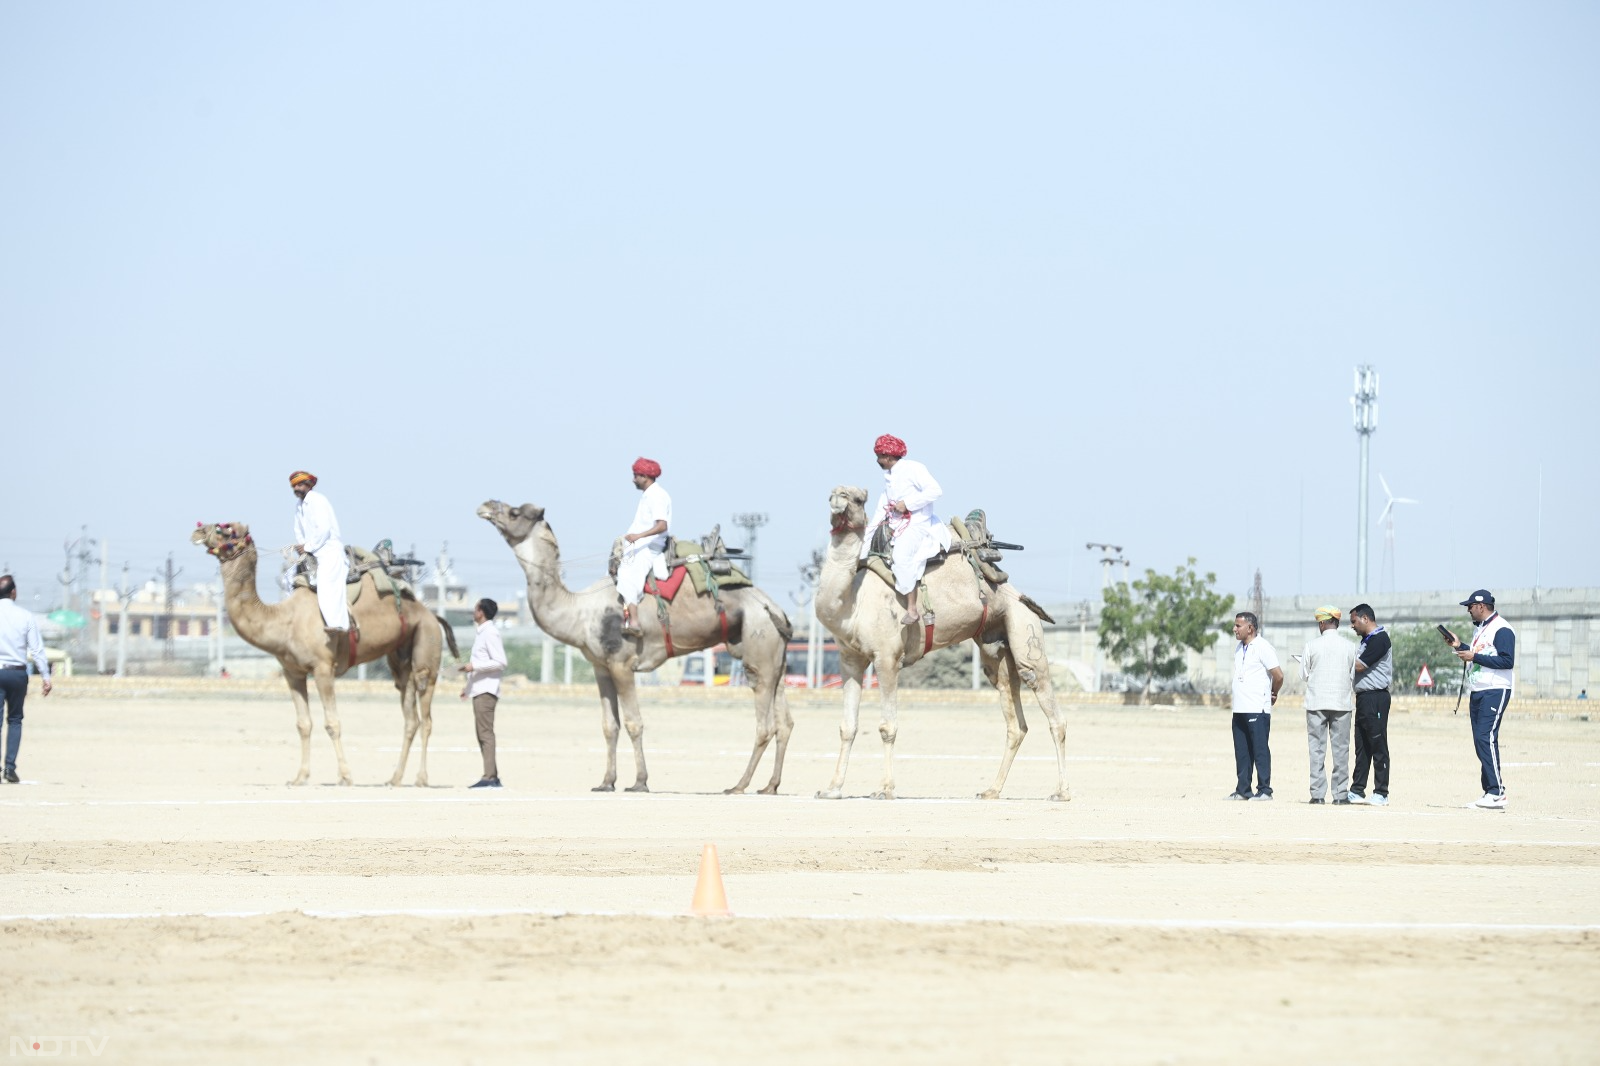 Desert Festival 2024: रोमांचक स्पर्धाओं ने खींचा लोगों का ध्यान, वायु सेना के जवानों ने भी दिखाएं करतब | Photos